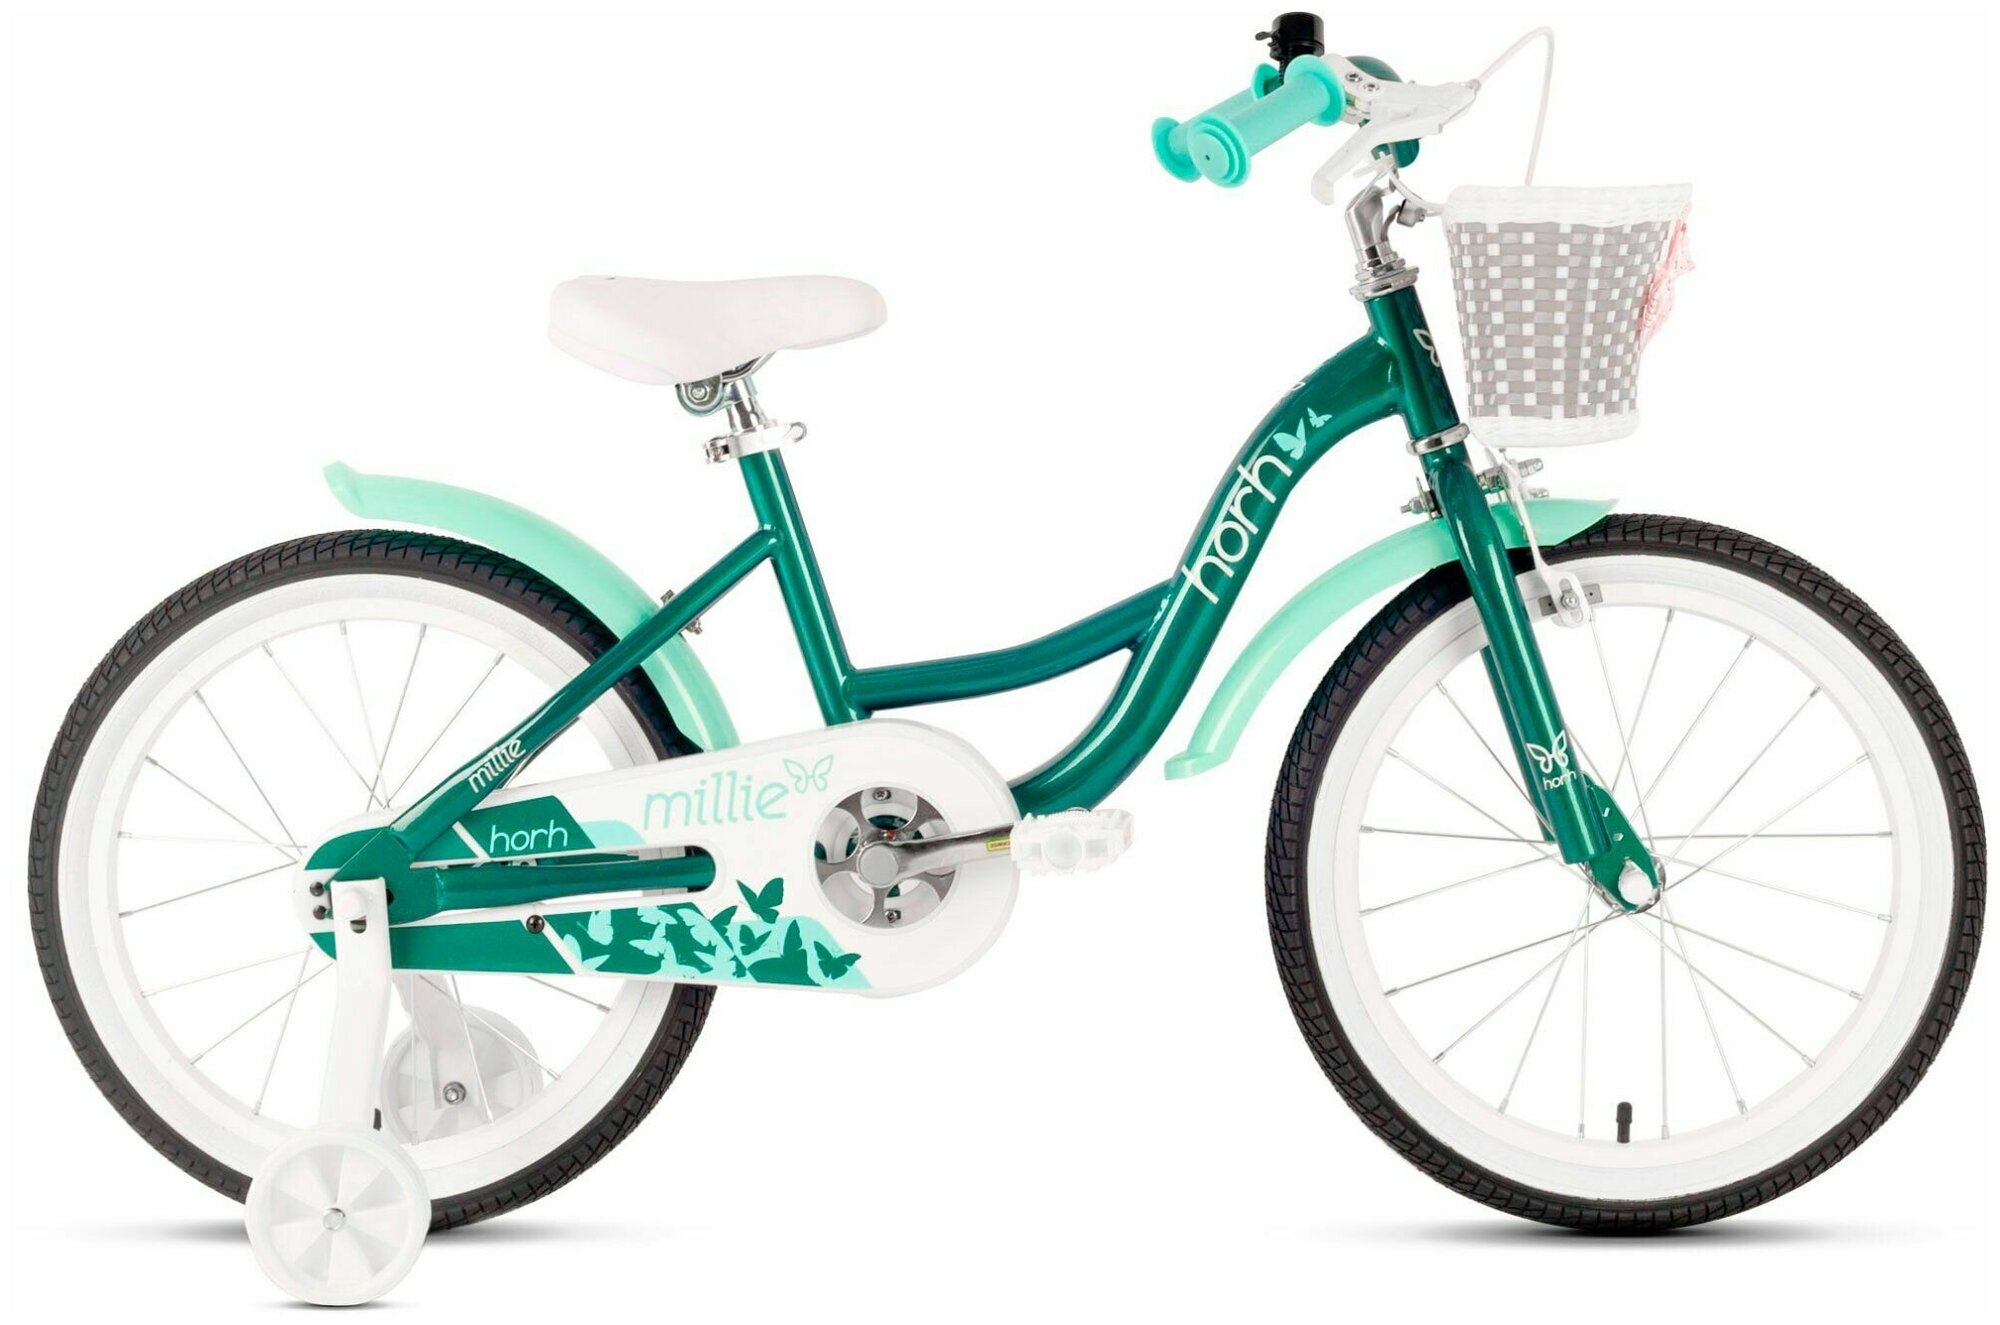 Велосипед детский городской HORH MILLIE 18 2022 для детей от 4 лет до 6 лет алюминиевый с защитой цепи, корзиной, звонком, крыльями, 1 ск, ободной и ножной тормоза, темно-зеленый цвет, рост 115-130